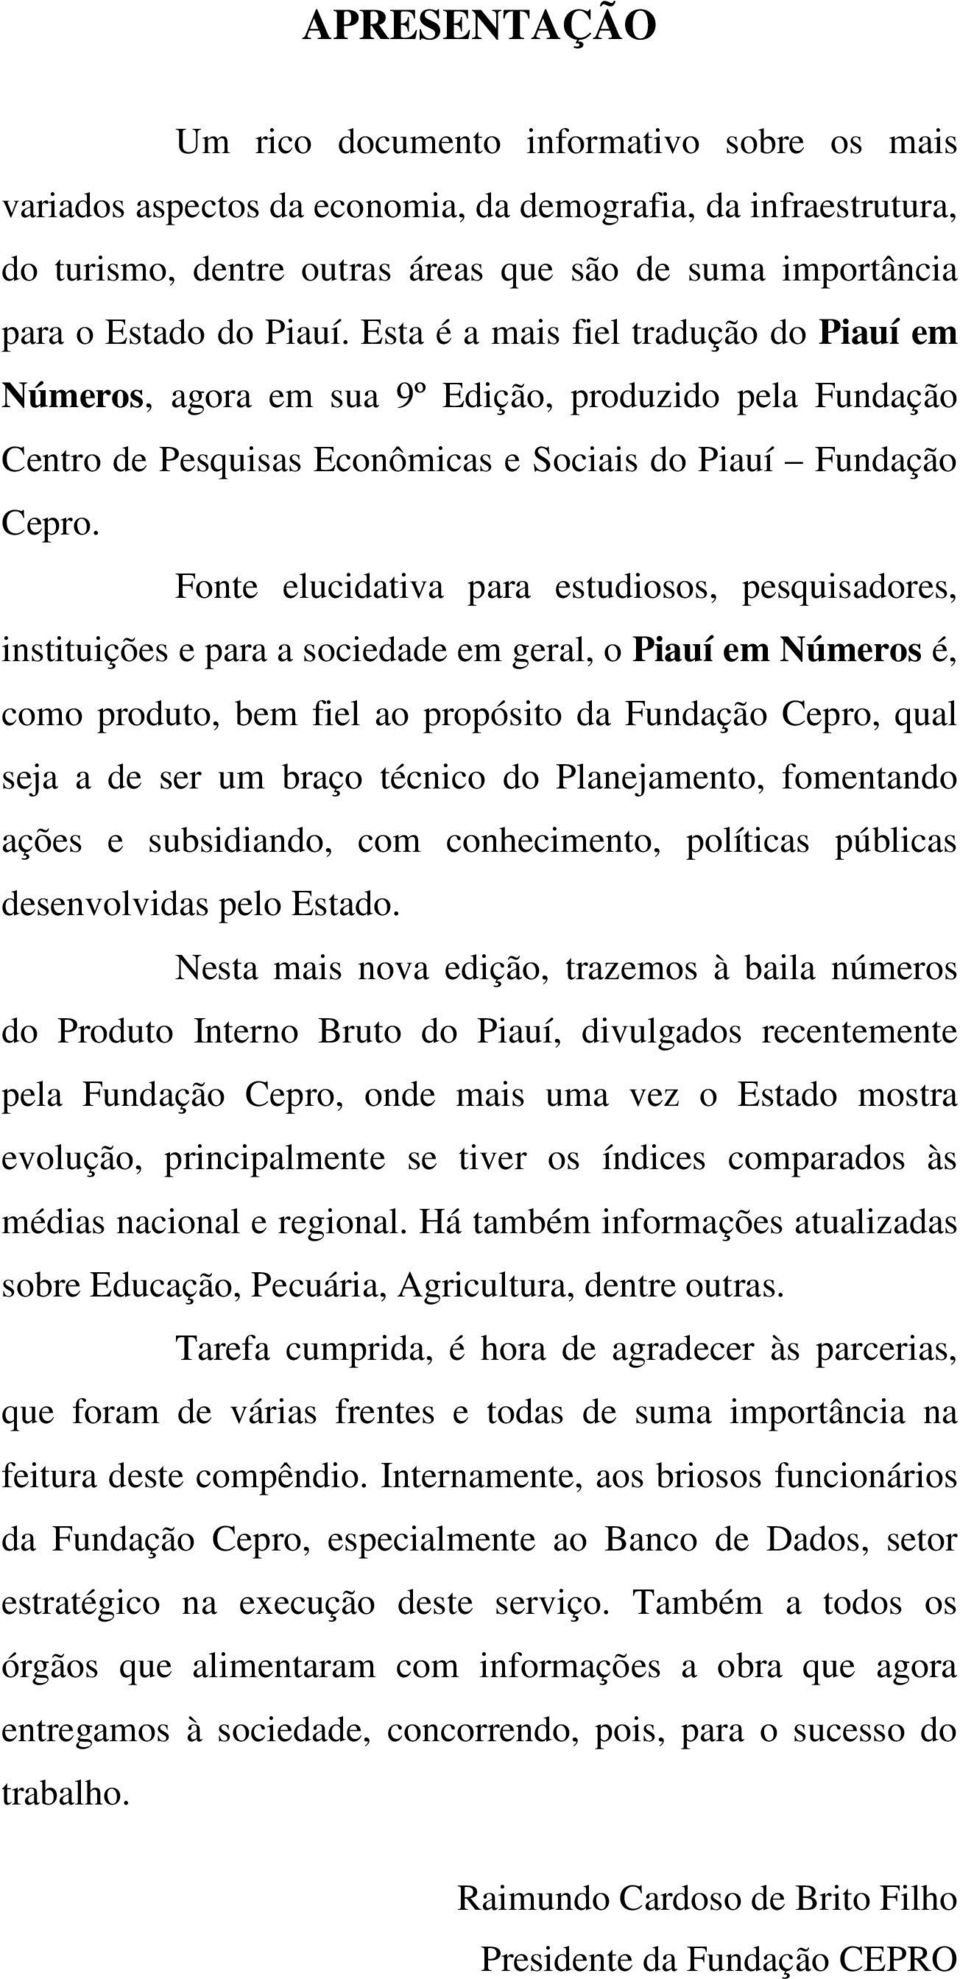 Fonte elucidativa para estudiosos, pesquisadores, instituições e para a sociedade em geral, o Piauí em Números é, como produto, bem fiel ao propósito da Fundação Cepro, qual seja a de ser um braço